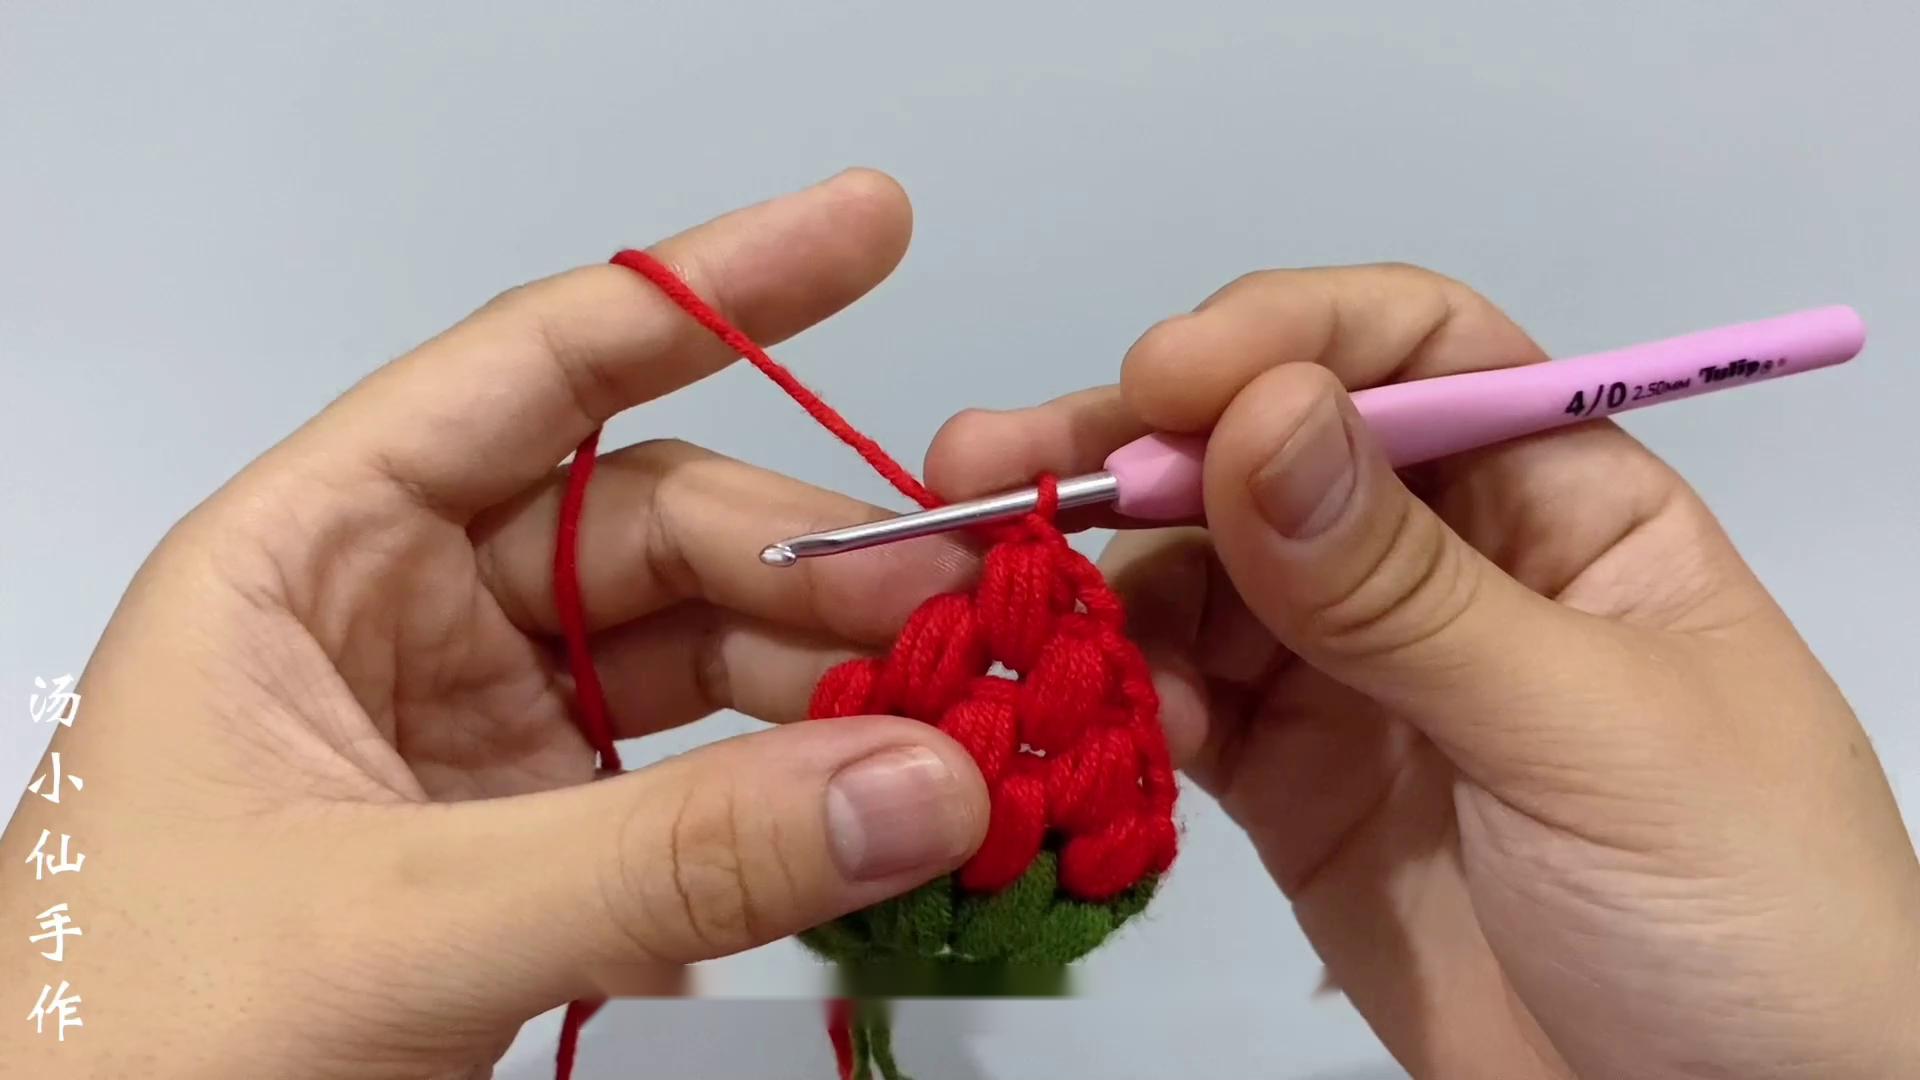 甜美草莓发带新手毛线钩针编织教程【汤小仙手作】-编织教程视频